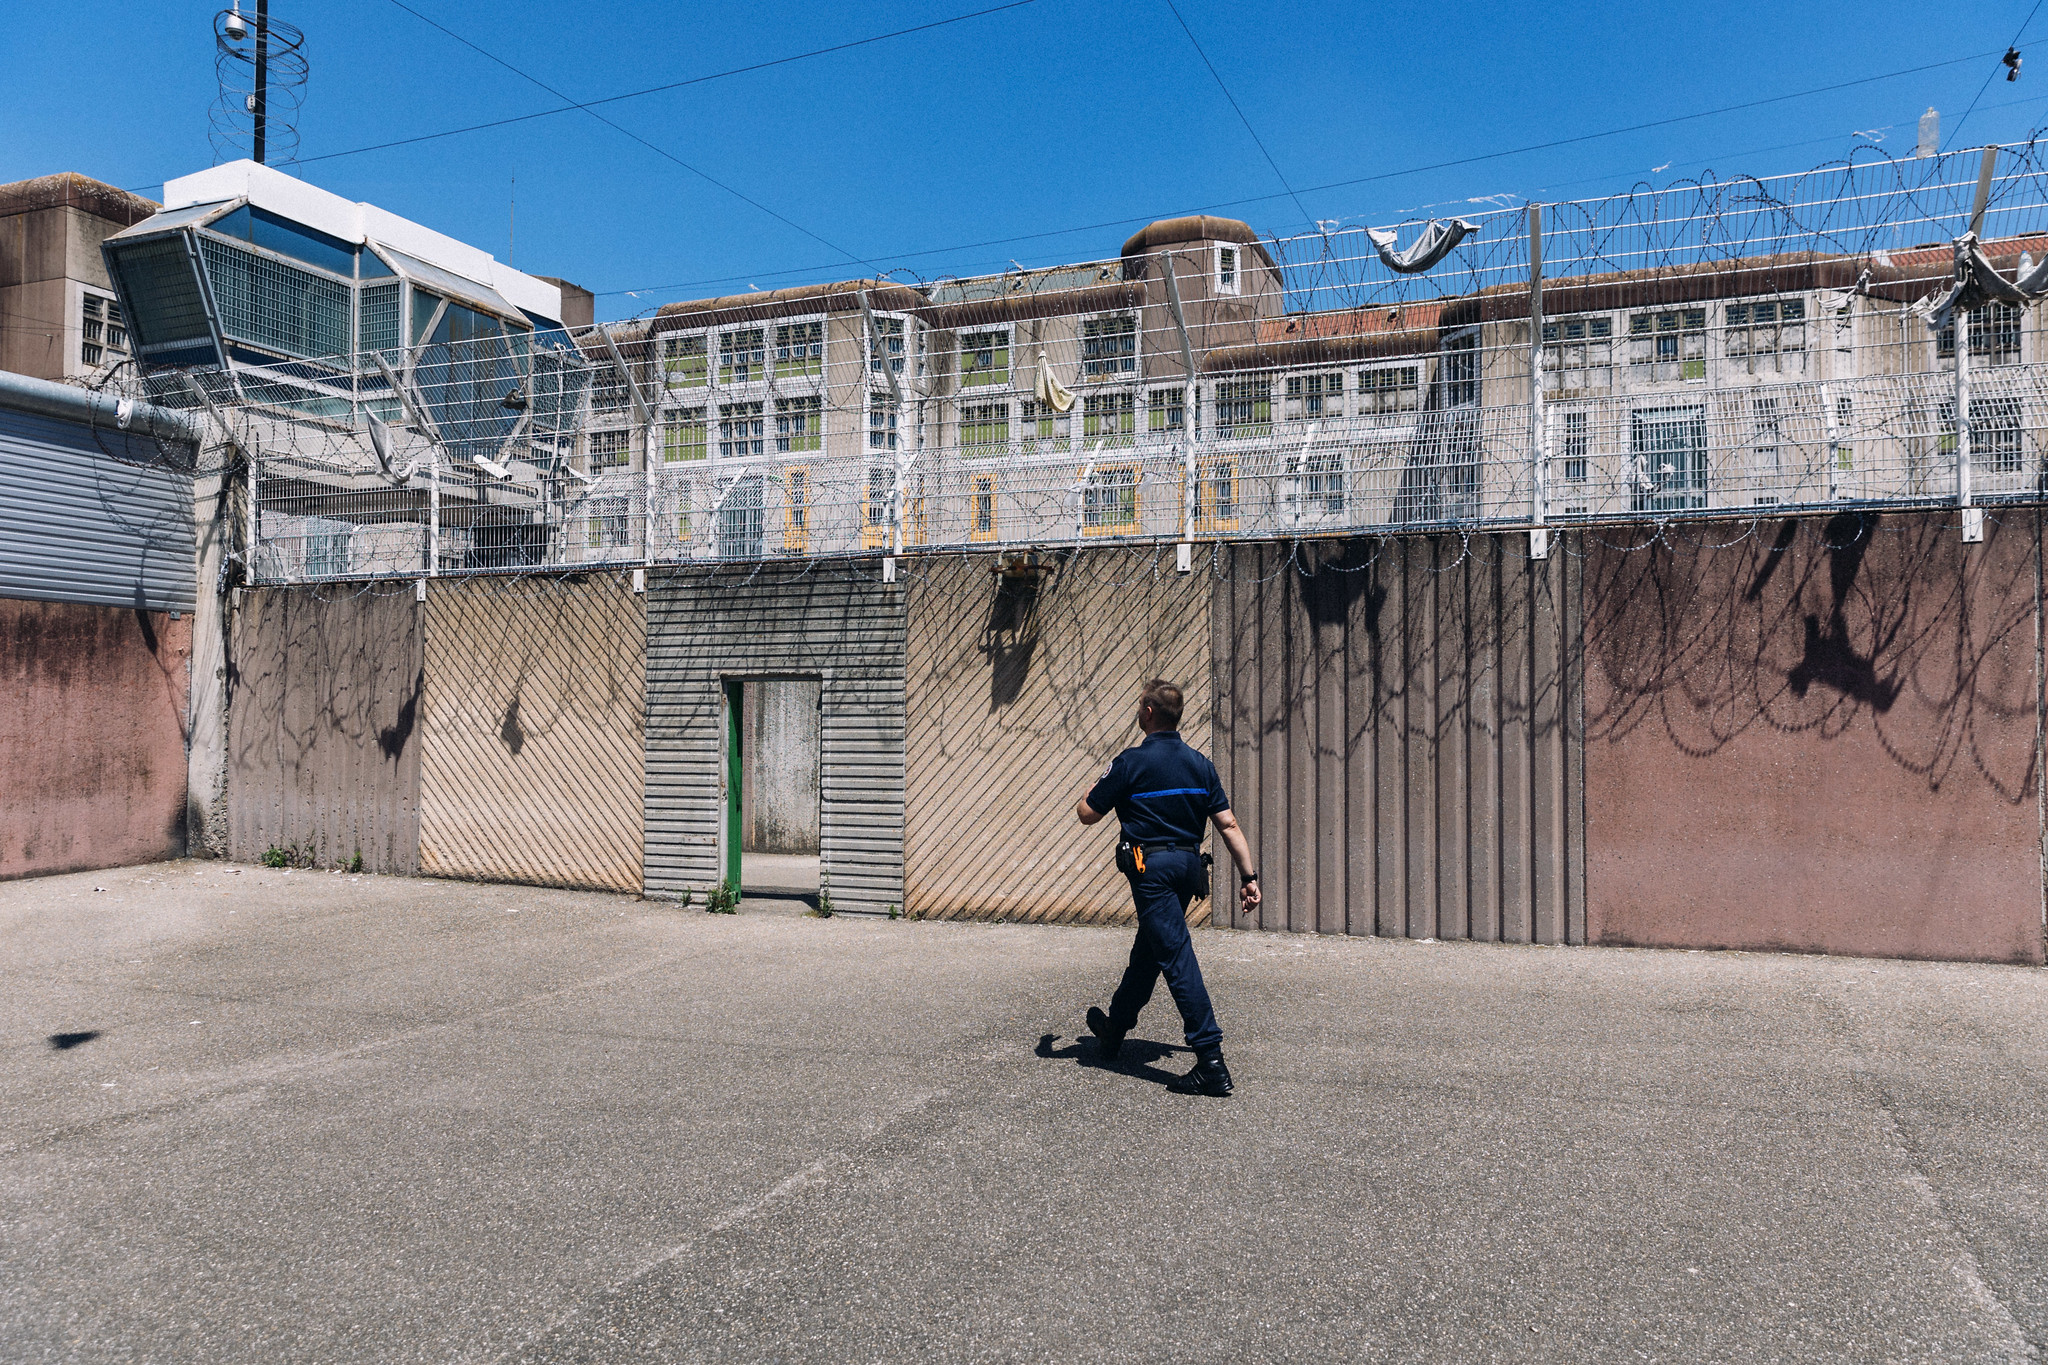 La promenade de la prison de Strasbourg : réduite, sans eau et risquée